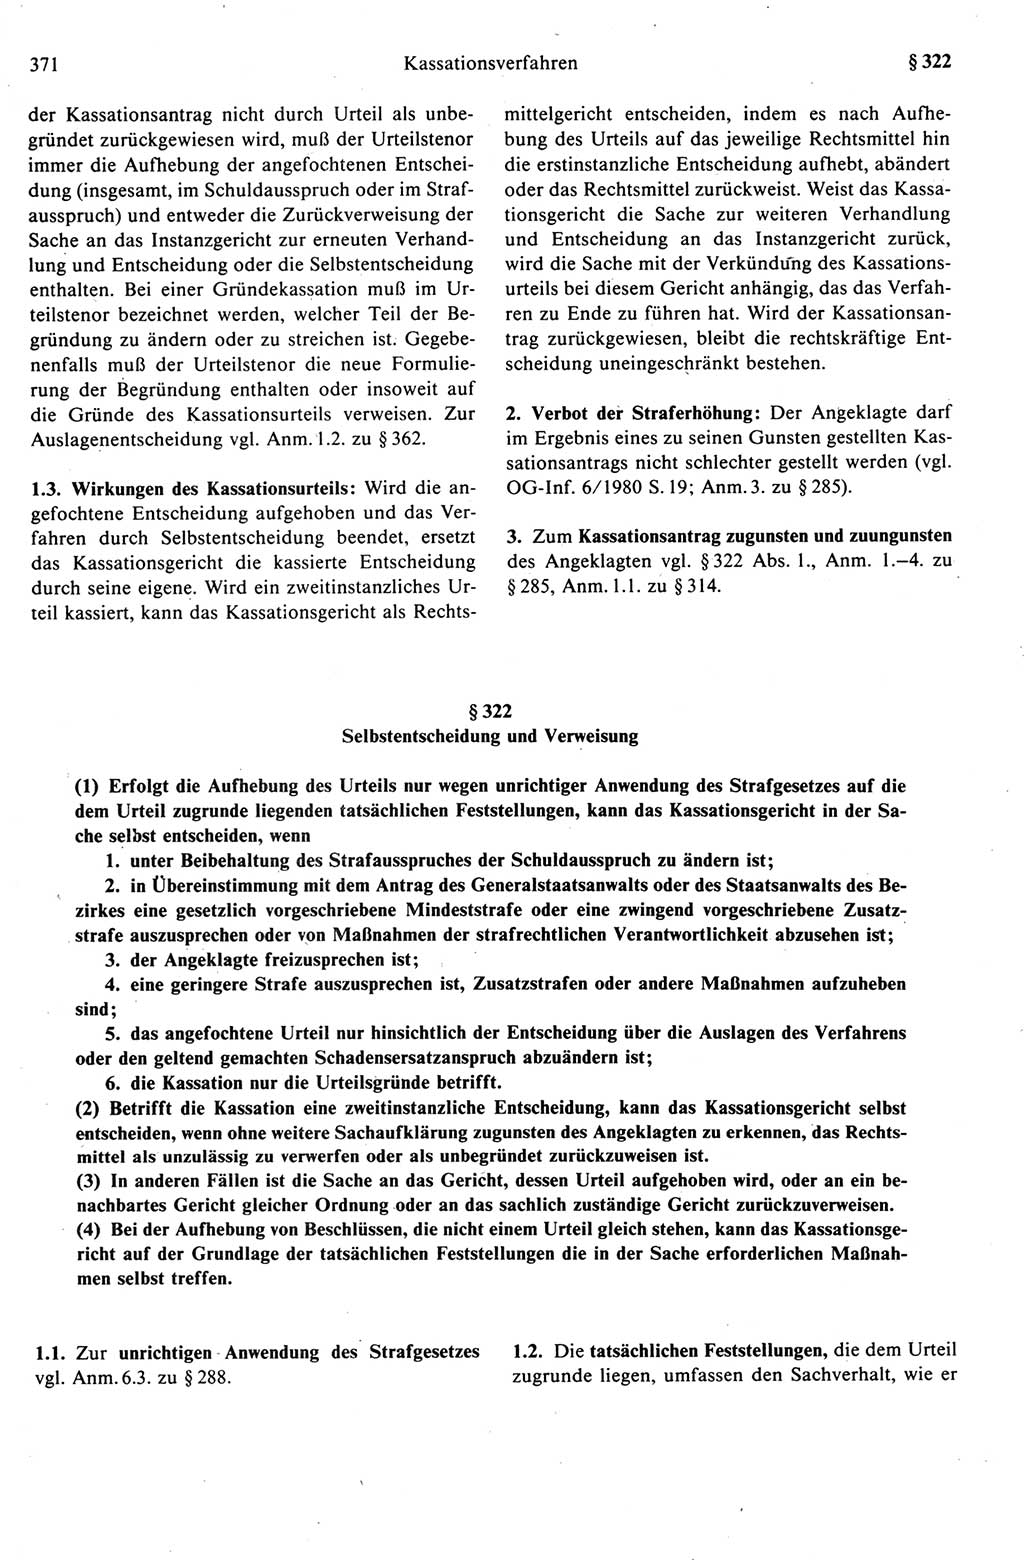 Strafprozeßrecht der DDR (Deutsche Demokratische Republik), Kommentar zur Strafprozeßordnung (StPO) 1989, Seite 371 (Strafprozeßr. DDR Komm. StPO 1989, S. 371)